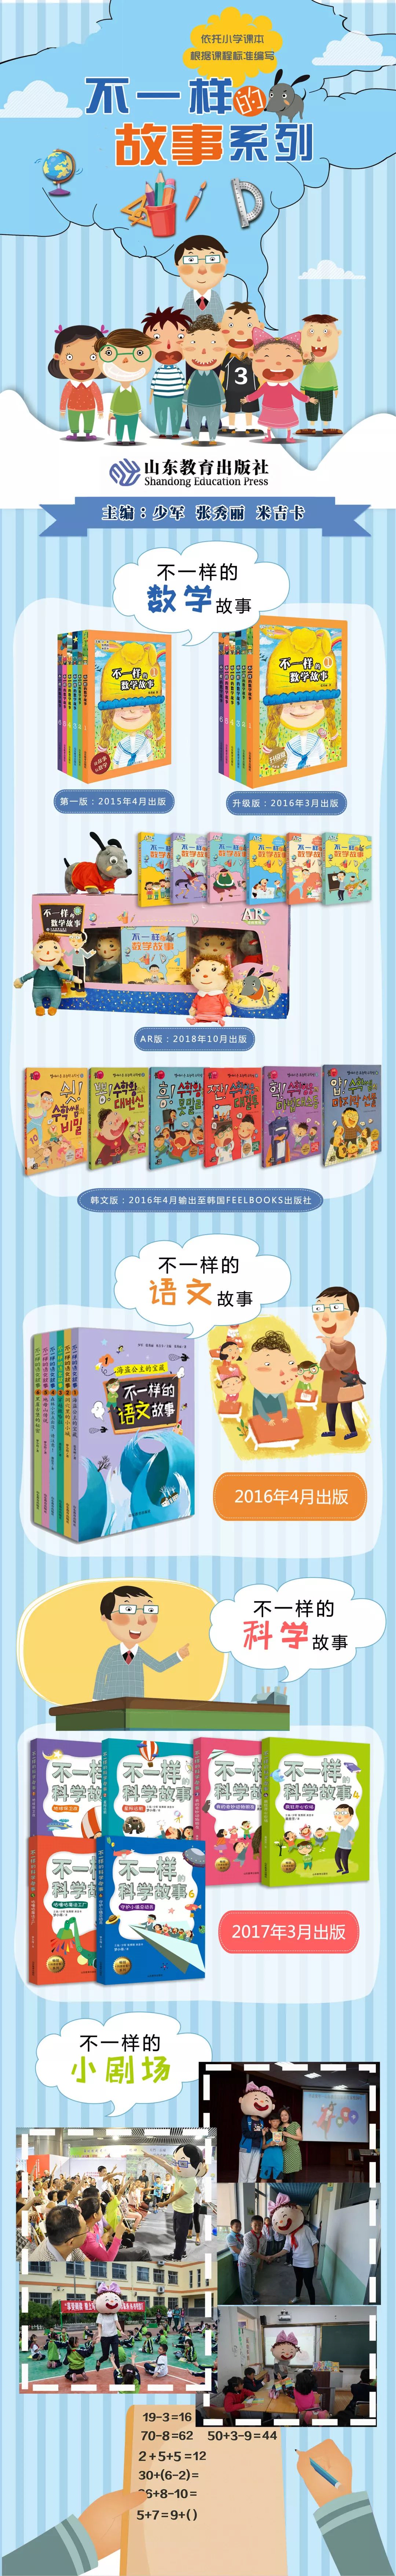 原创知识性动画片《不一样的数学故事》在重庆、内蒙古少儿频道热播AG旗舰厅(图3)